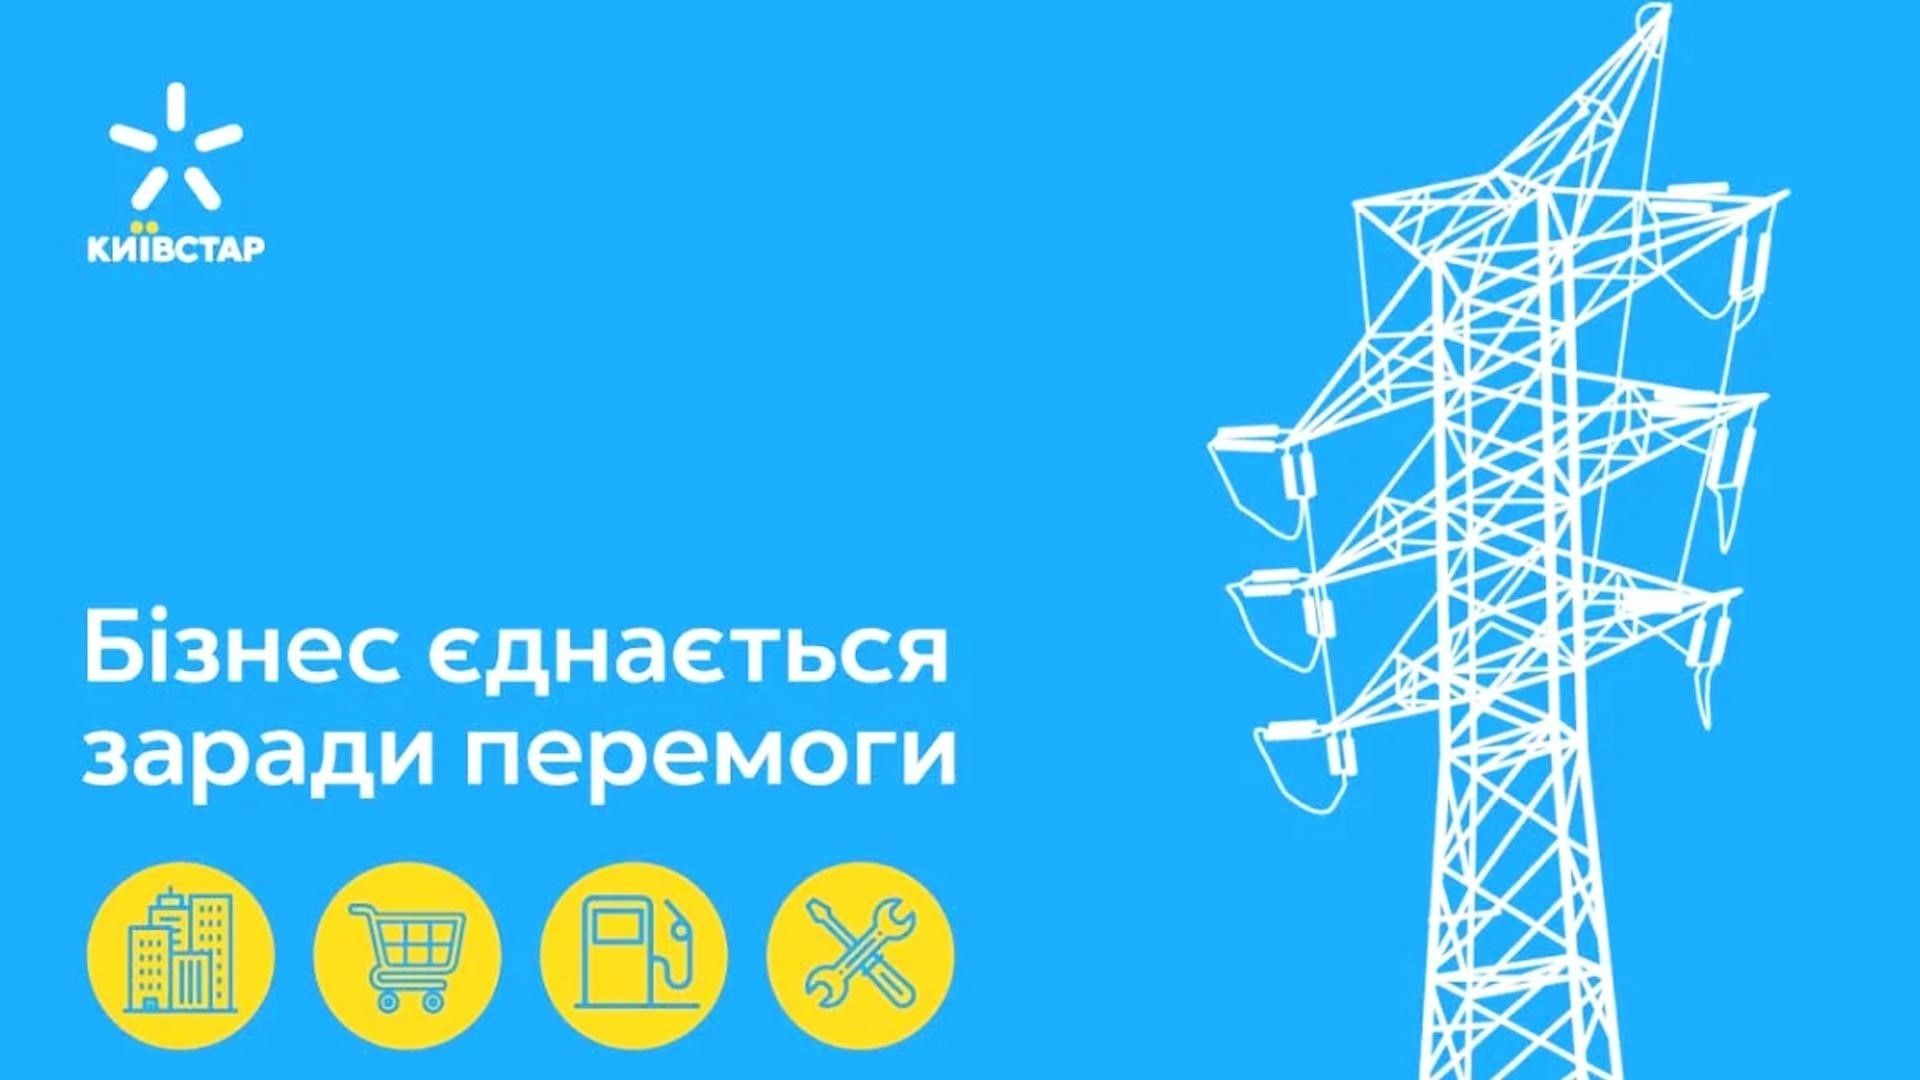 Киевстар запустил инициативу для улучшения связи